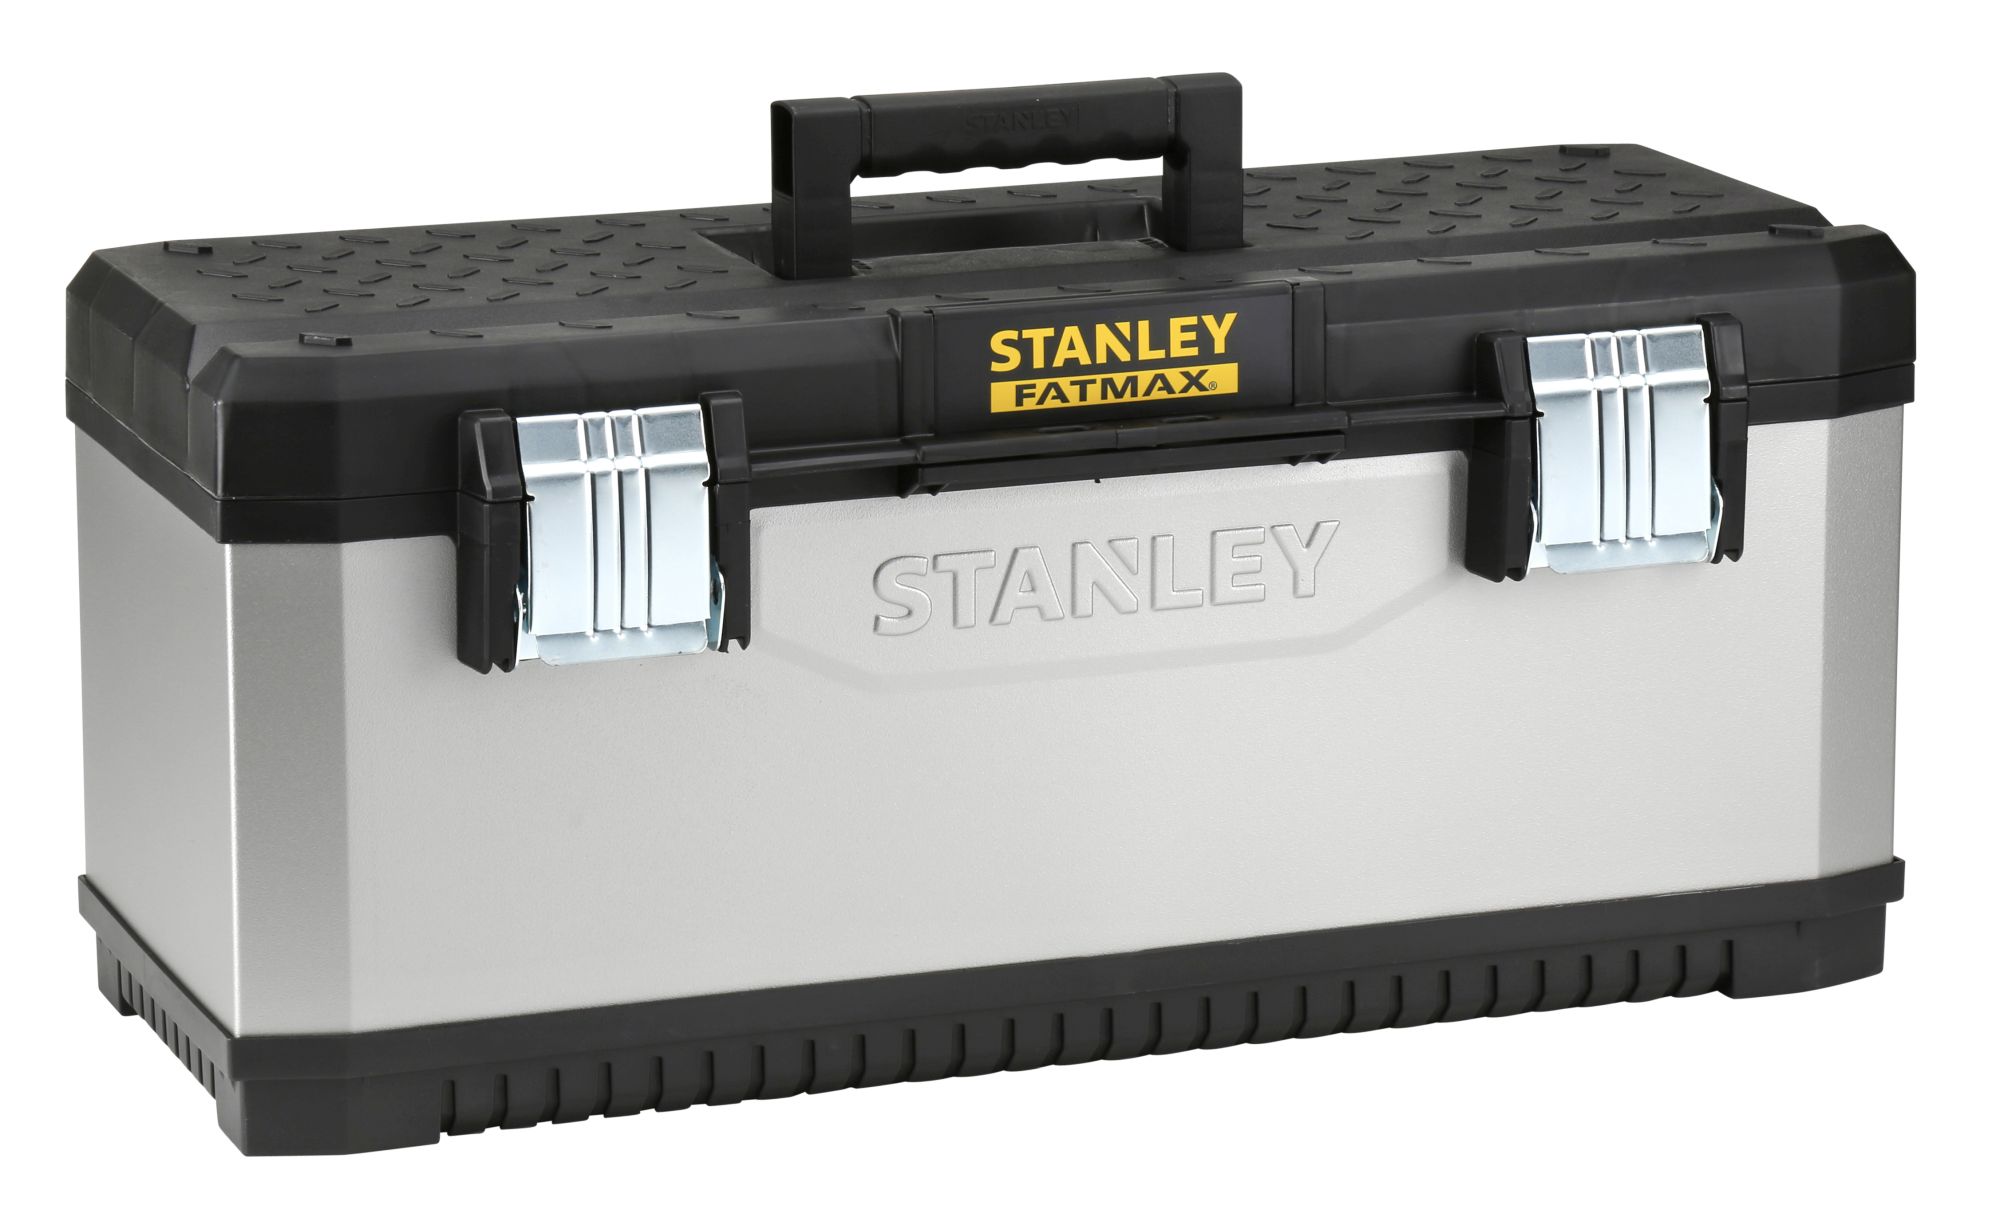 Caja de herramientas metálica 2 cajones Stanley - 48cm